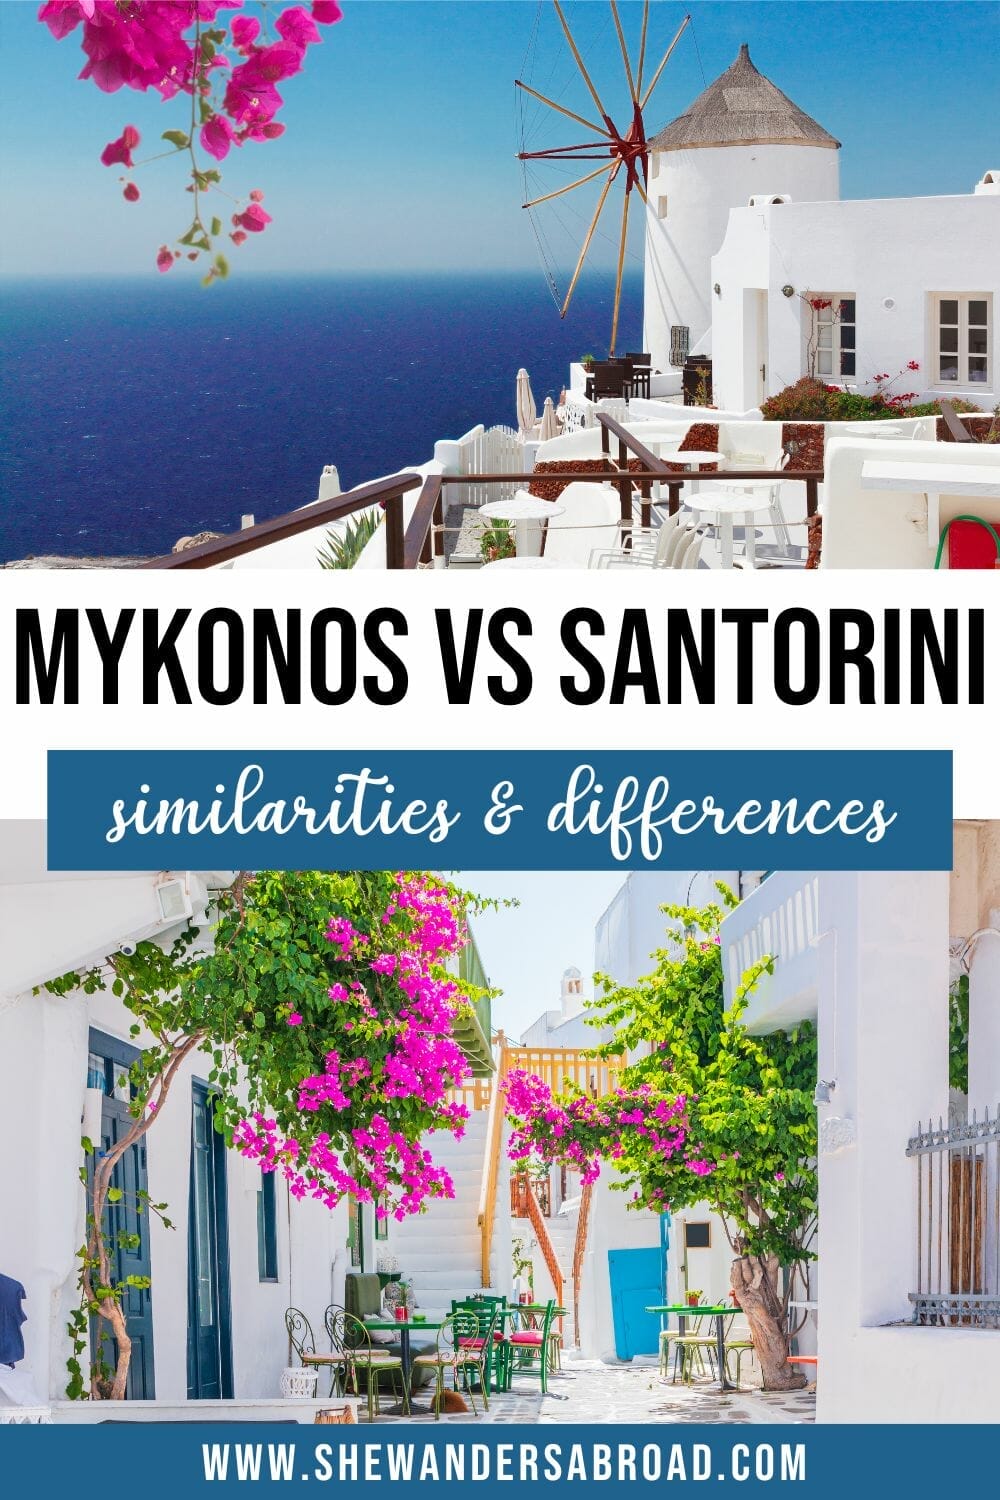 Mykonos vs Santorini: Which Greek Island is Better?